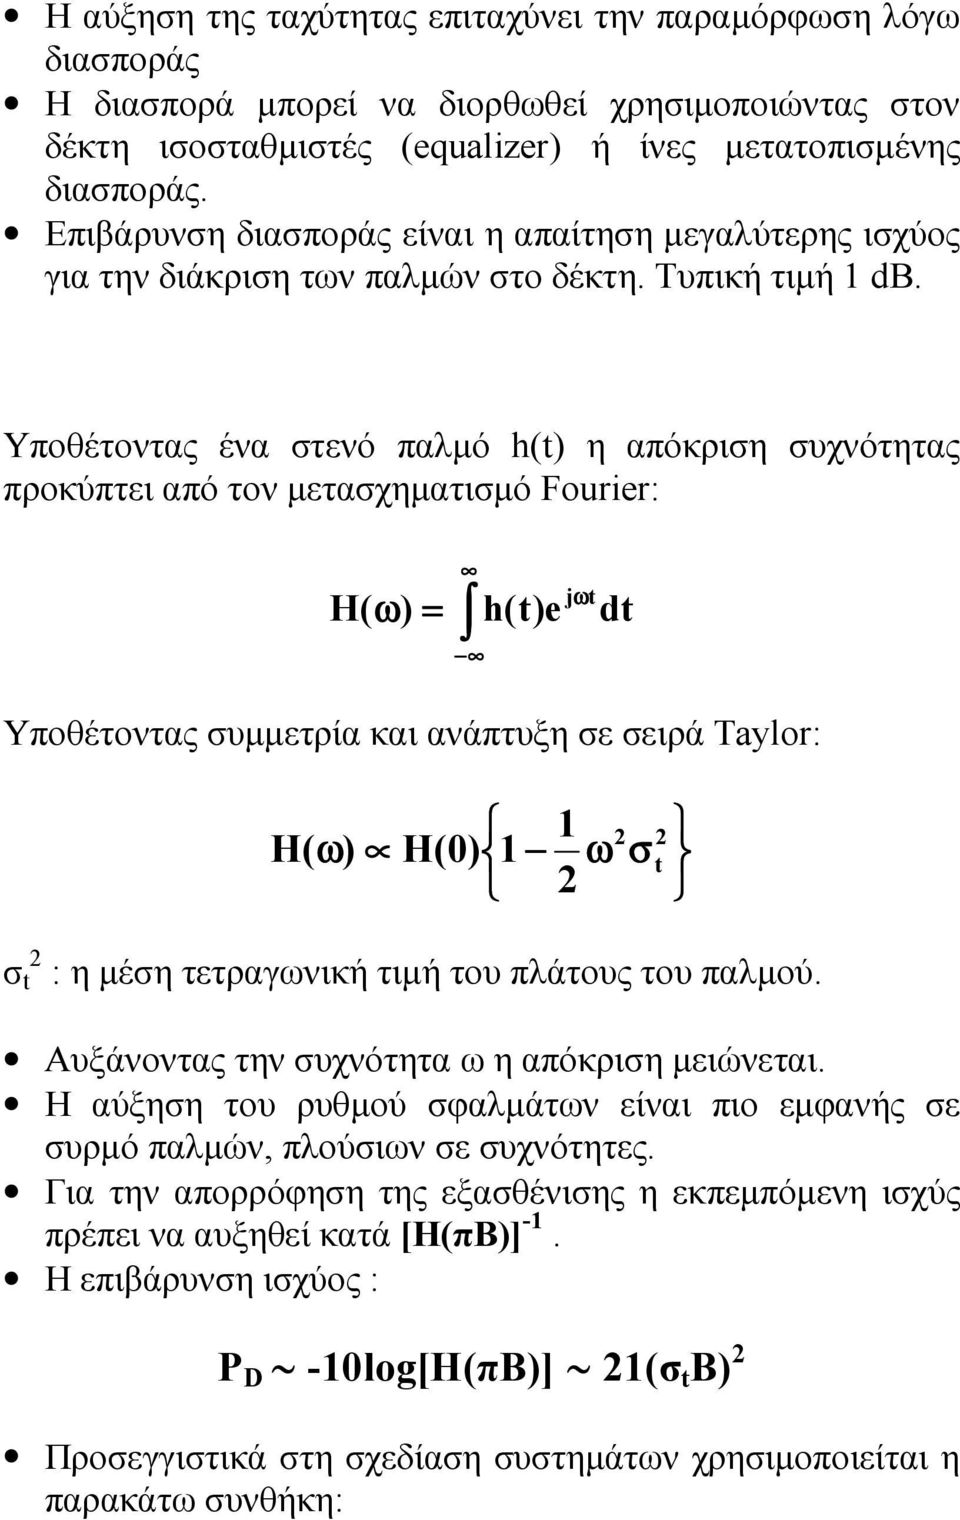 Υποθέτοντας ένα στενό παλµό h(t) η απόκριση συχνότητας προκύπτει από τον µετασχηµατισµό Fourier: H( ω) = h(t)e Υποθέτοντας συµµετρία και ανάπτυξη σε σειρά Taylor: jωt dt H ( ω) H(0) 1 1 2 ω 2 σ 2 t σ